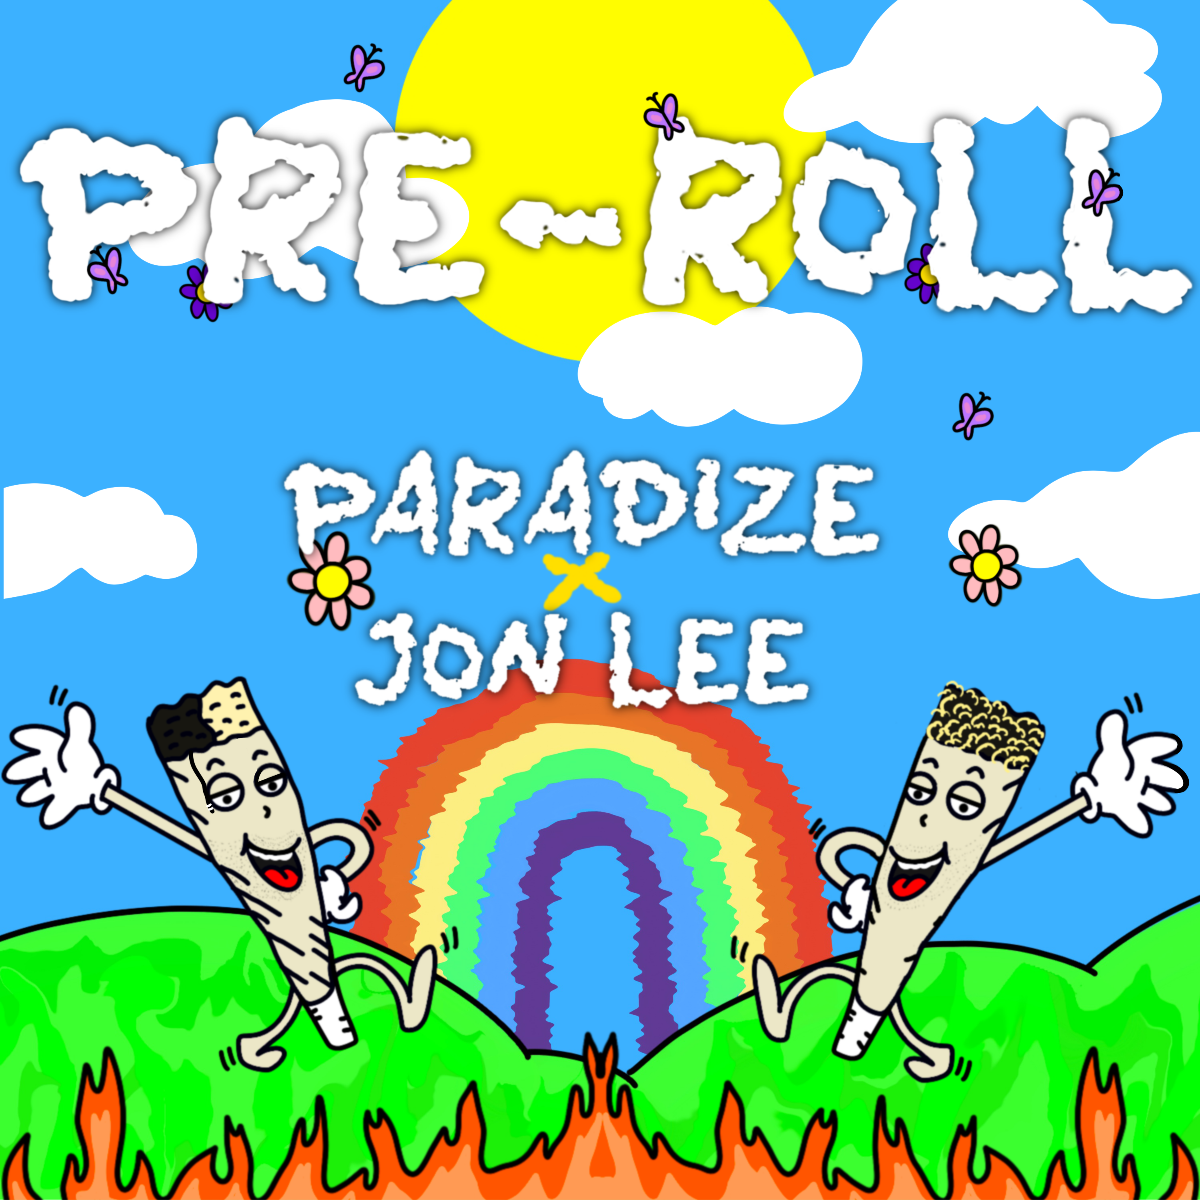 PARADIZE lanza nuevo sencillo “Pre Roll”